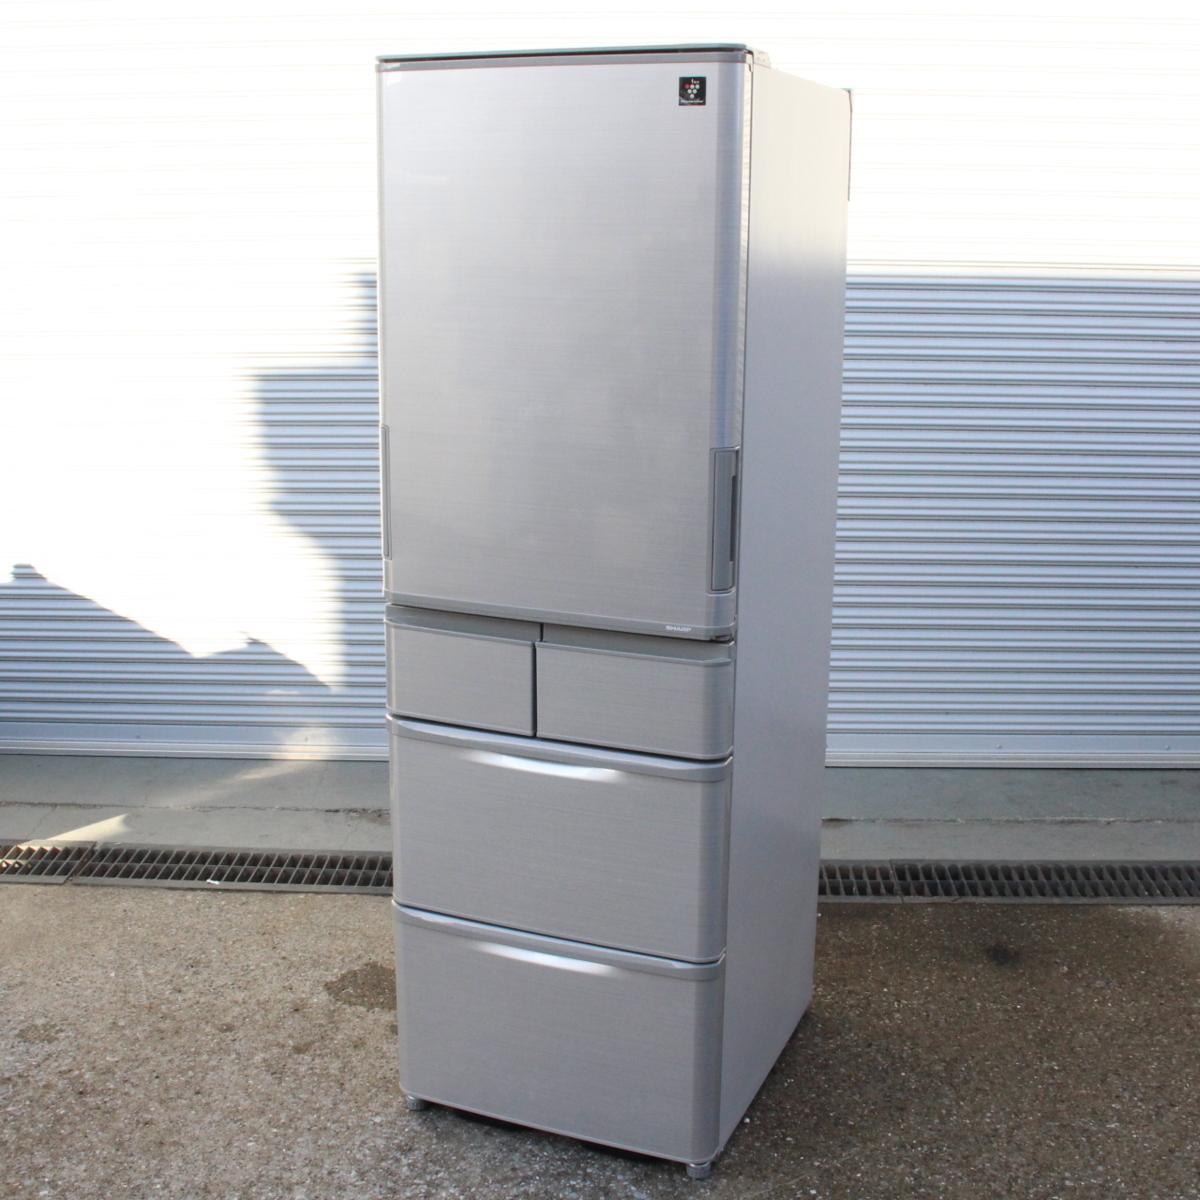 東京都三鷹市にて シャープ 冷凍冷蔵庫 SJ-W412F-S 2020年製 を出張買取させて頂きました。